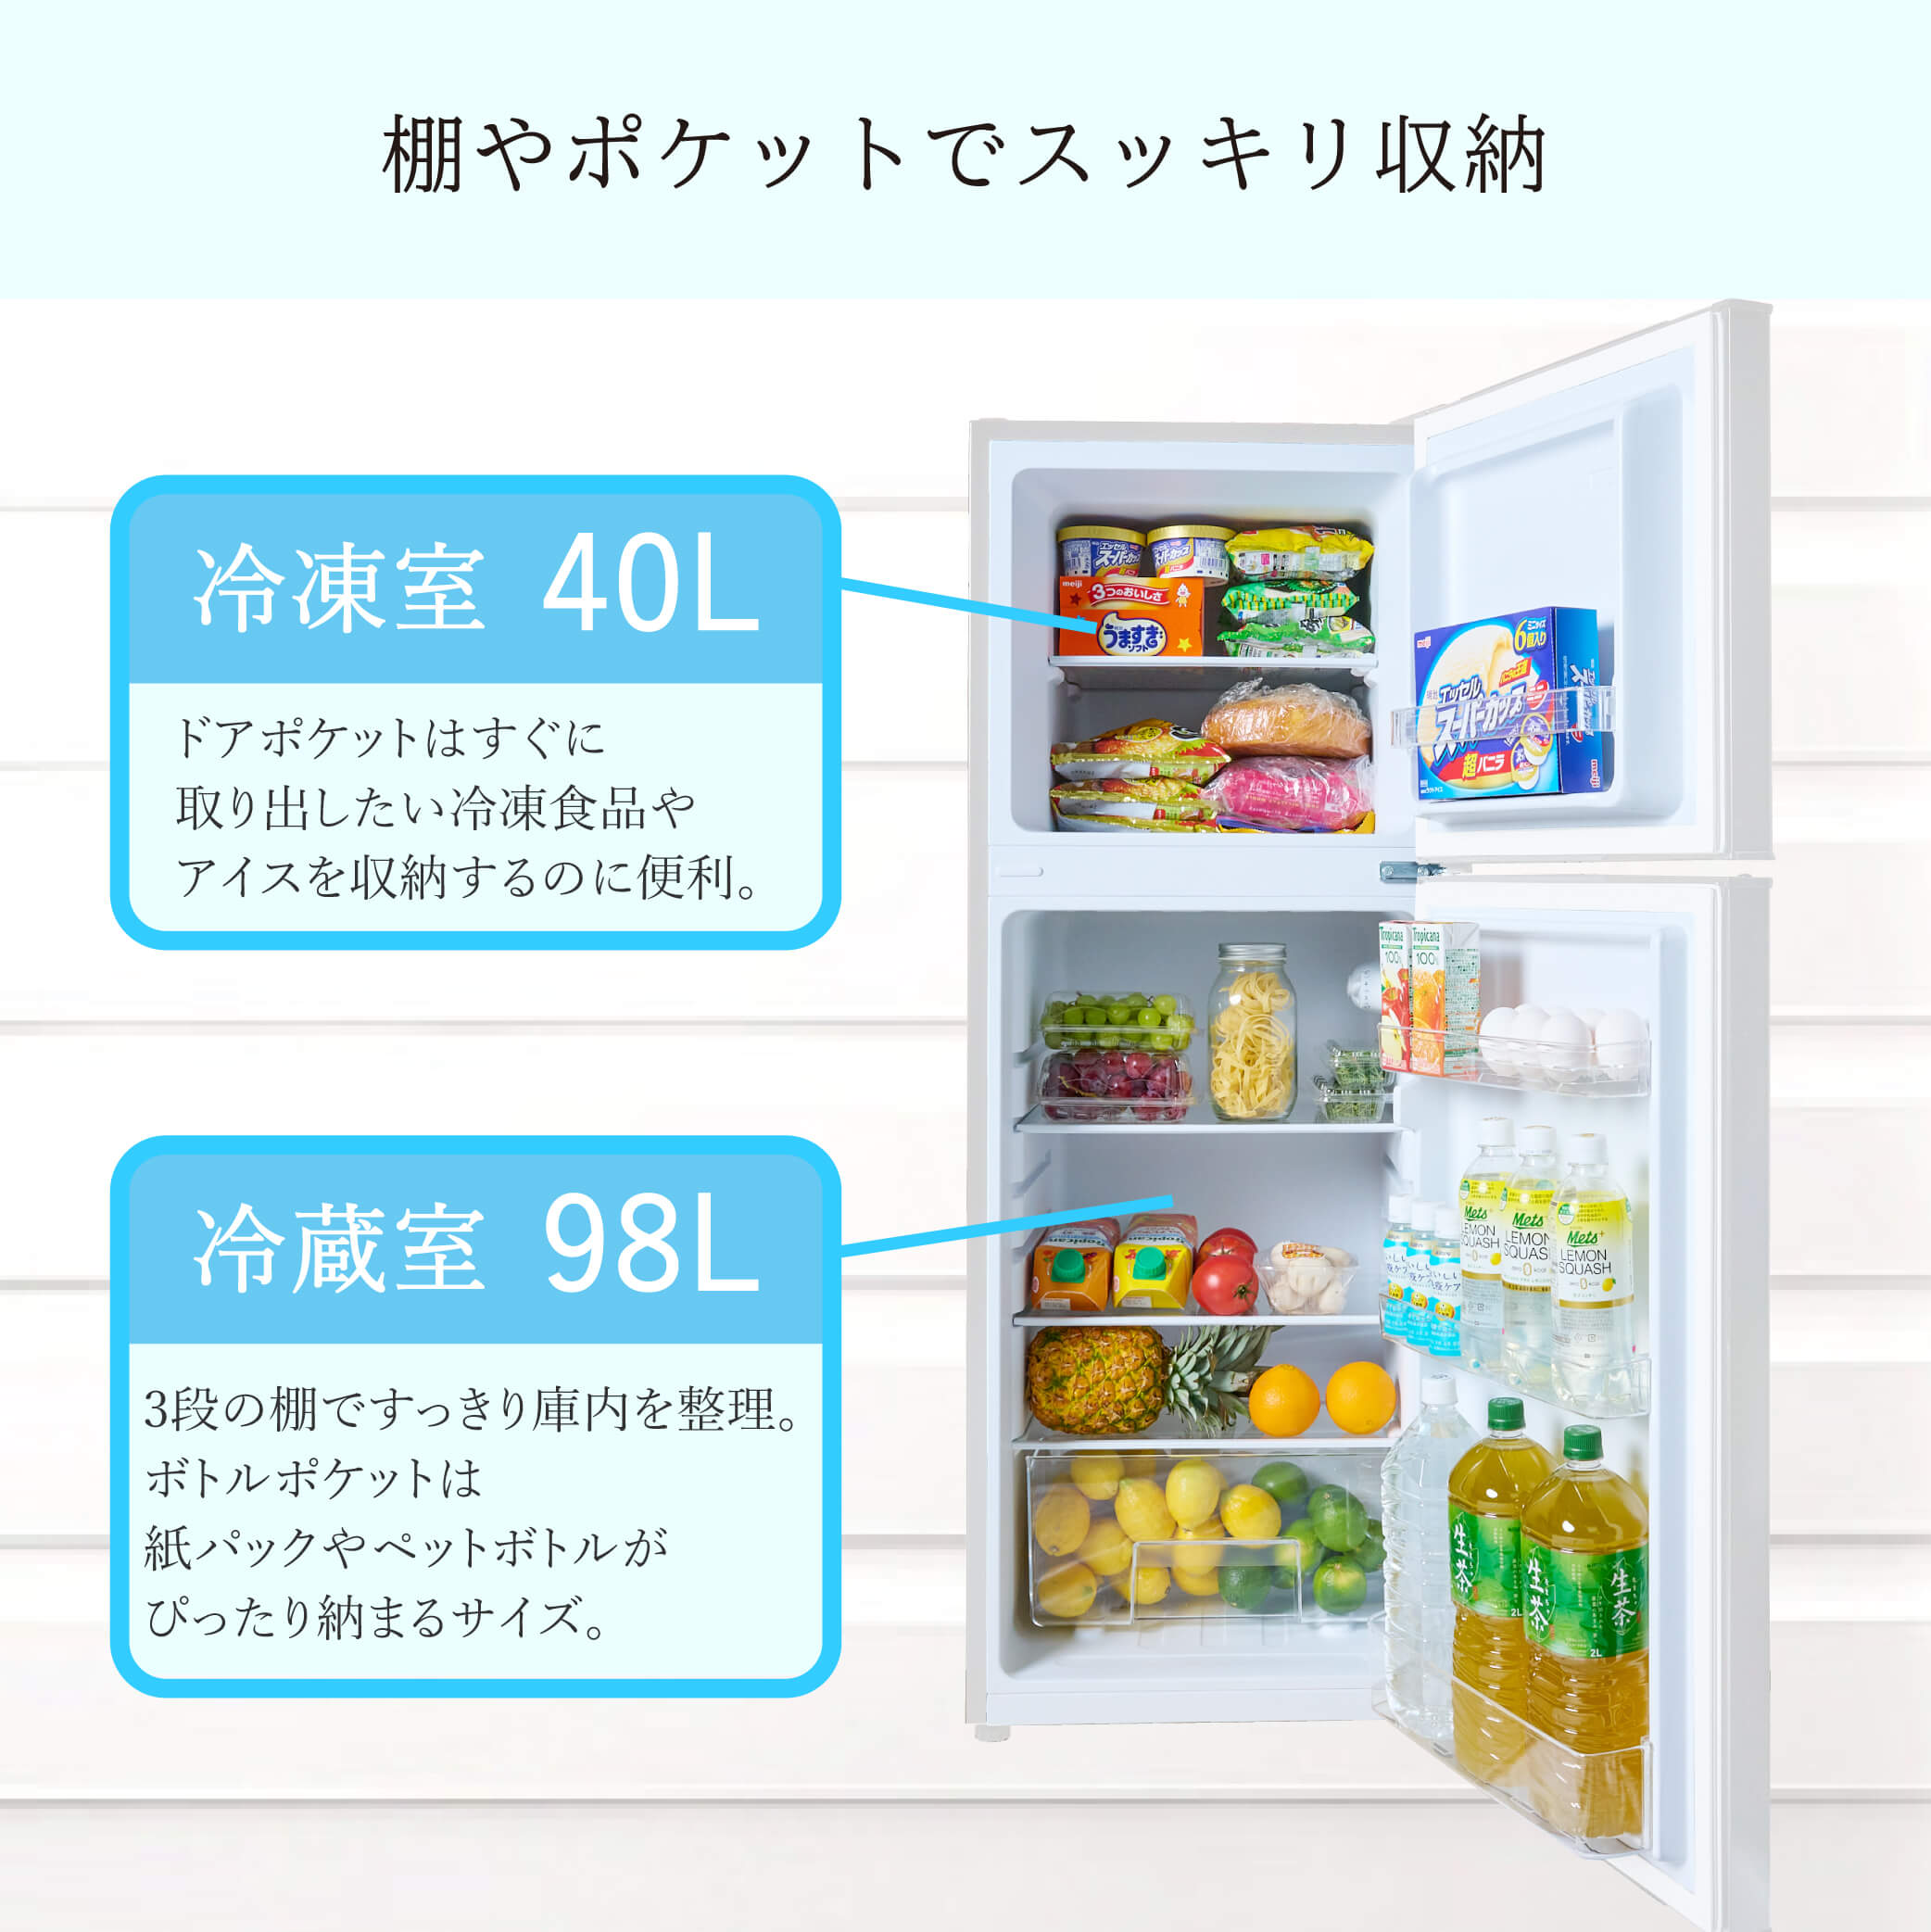 2ドア冷凍冷蔵庫 138L TH-138L2-WH : 製品一覧